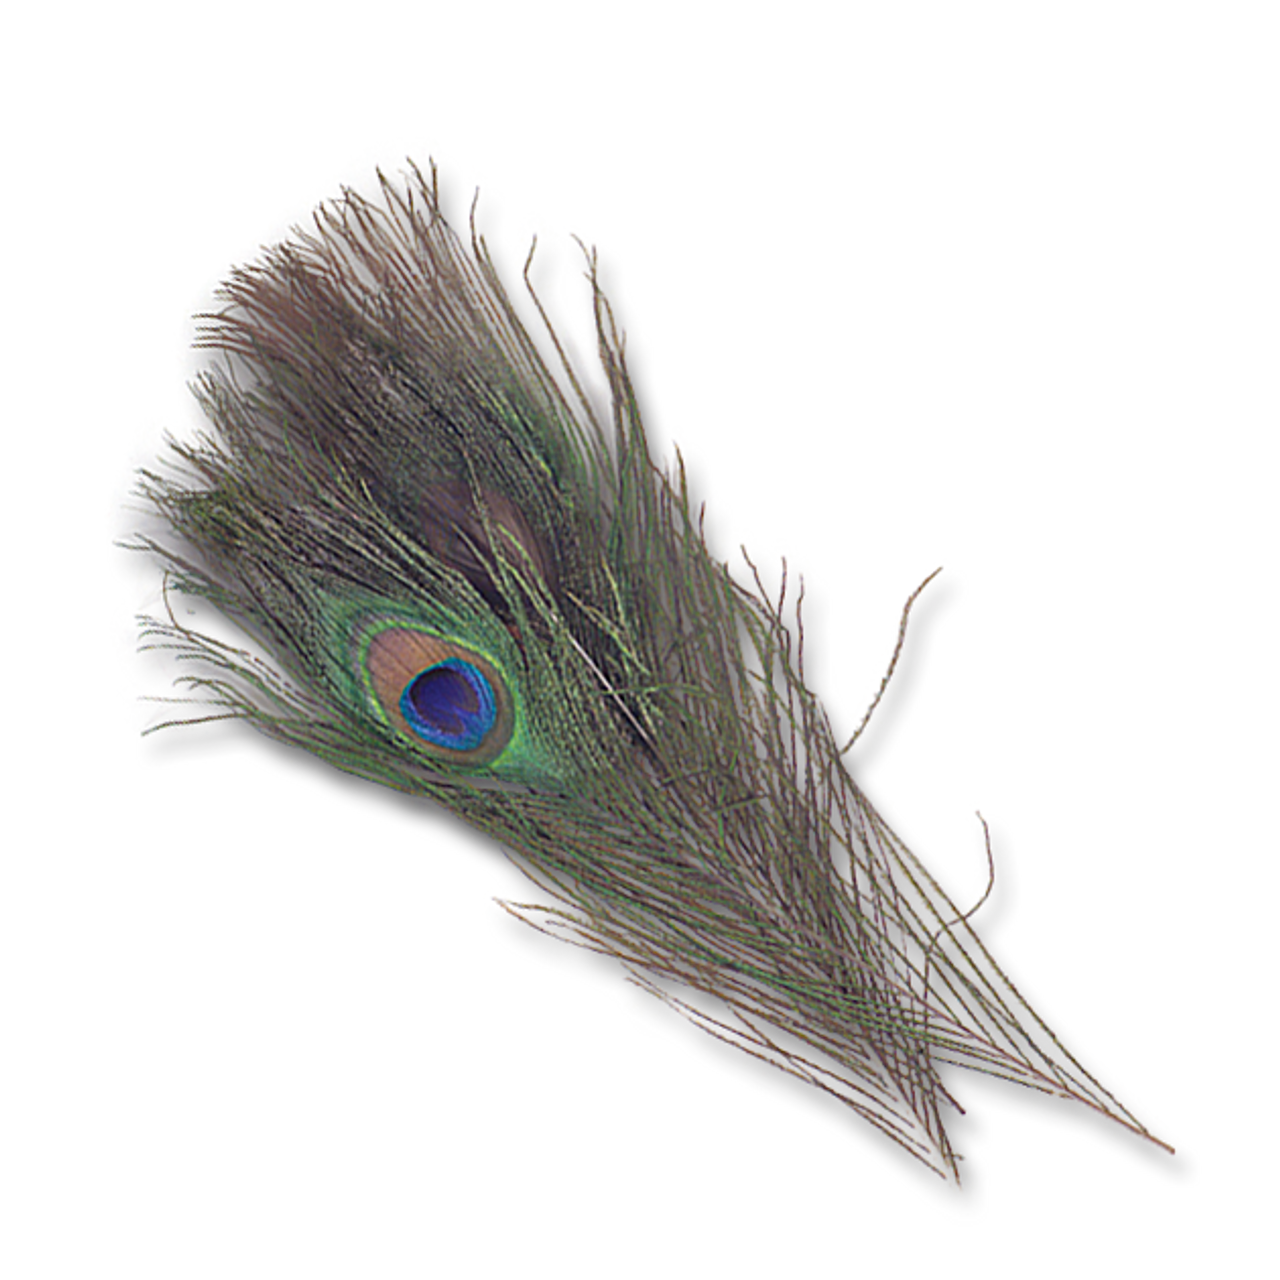 Natural Peacock Eyes